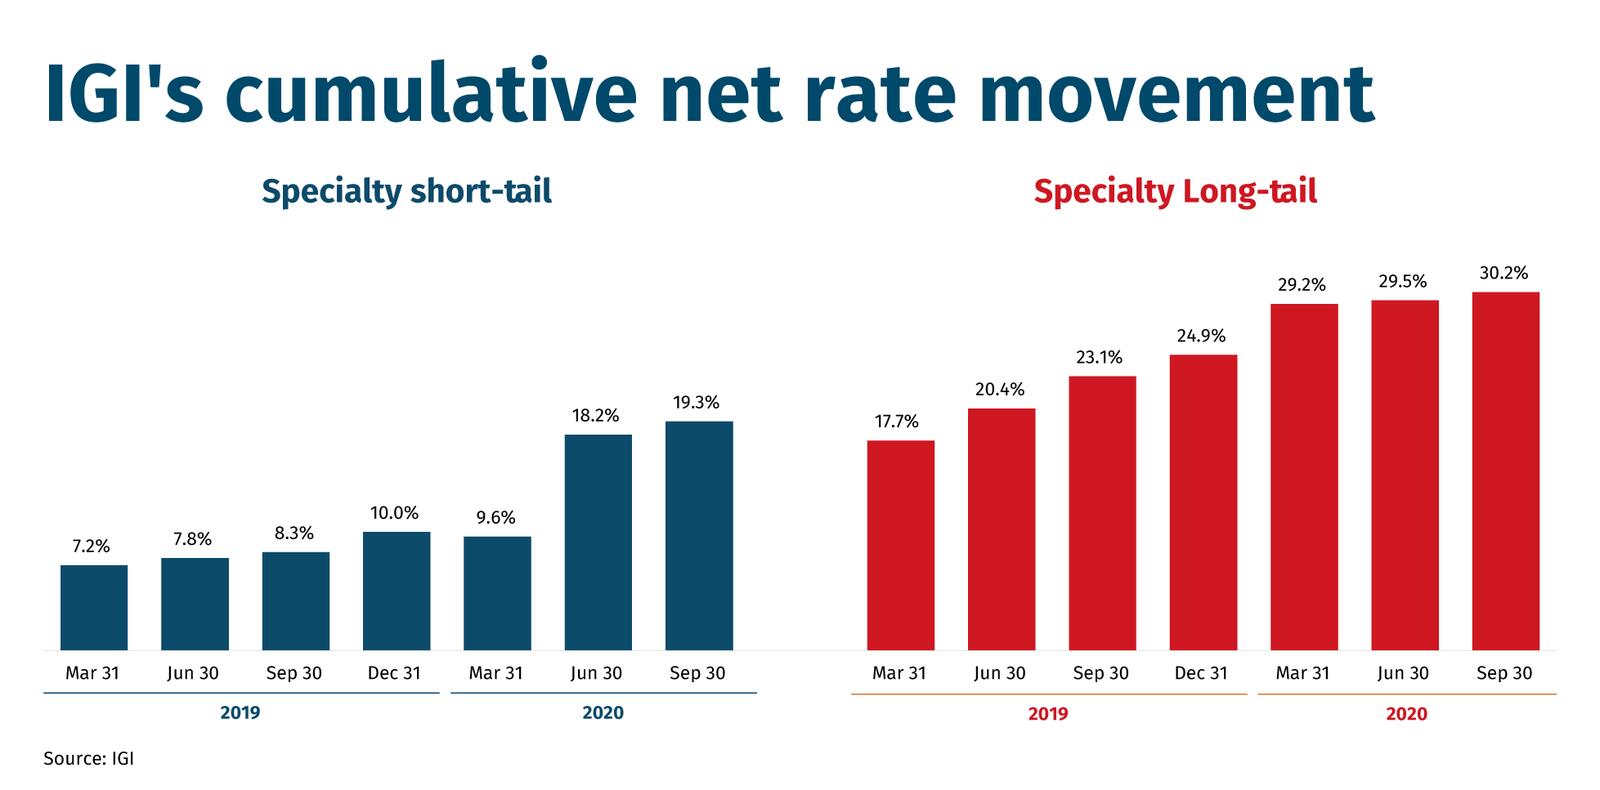 IGI's cumulative net rate movement